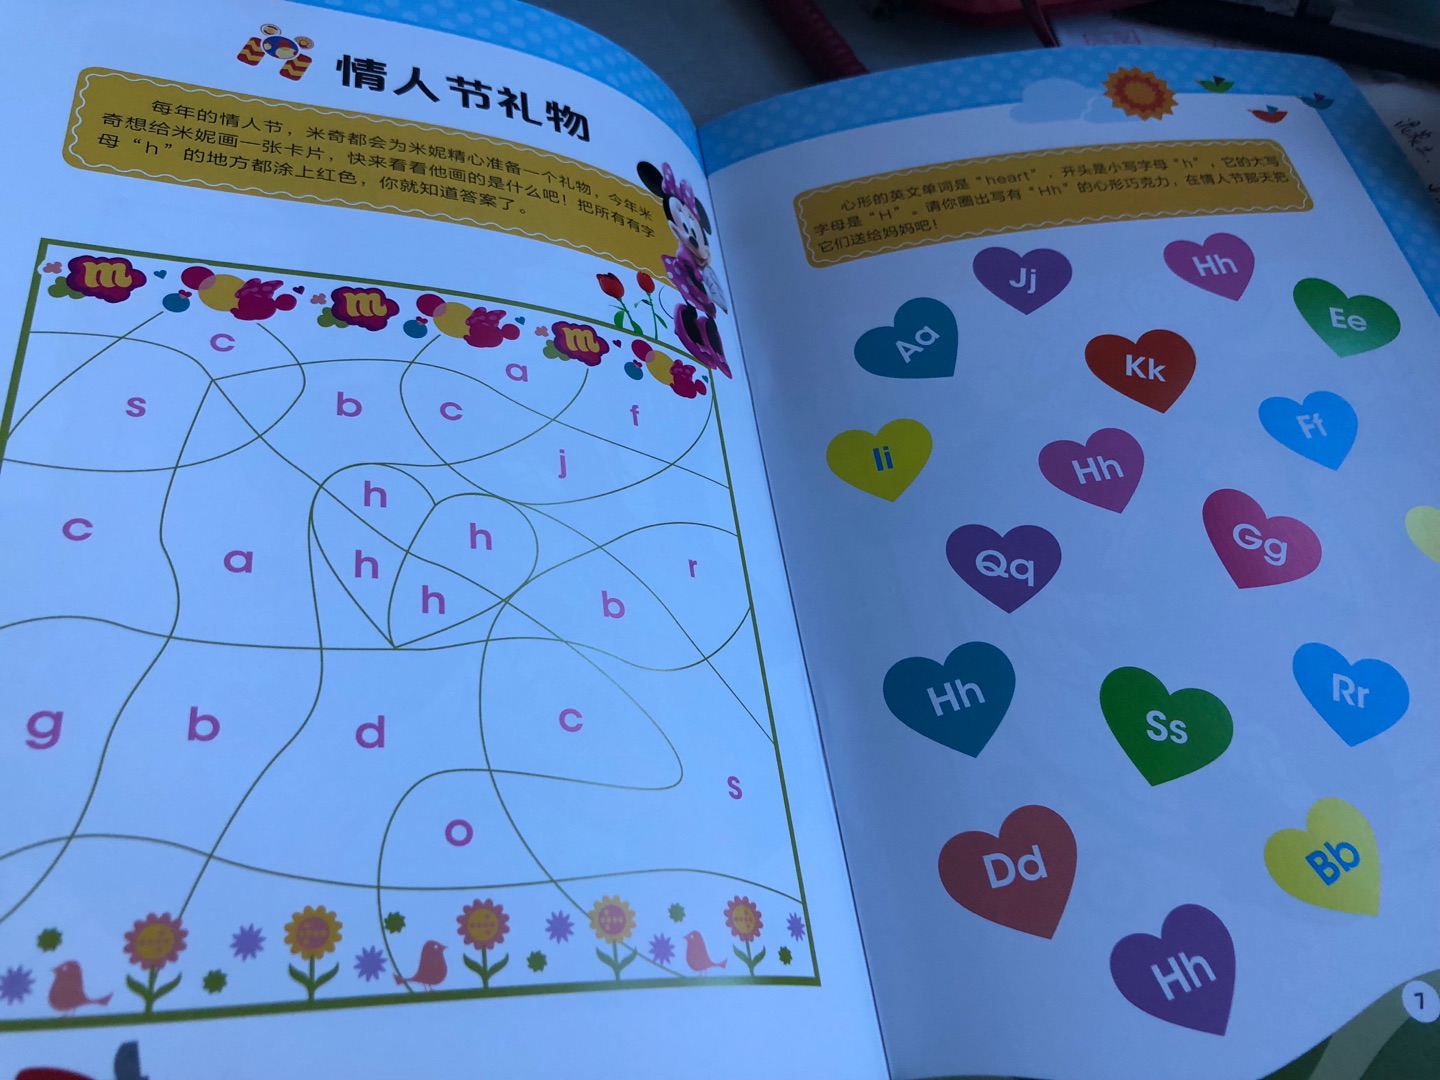 这一套是字母类的游戏书，适合刚认识字母的小孩子，有利于巩固基础，大一点的孩子还可以练习英文读写